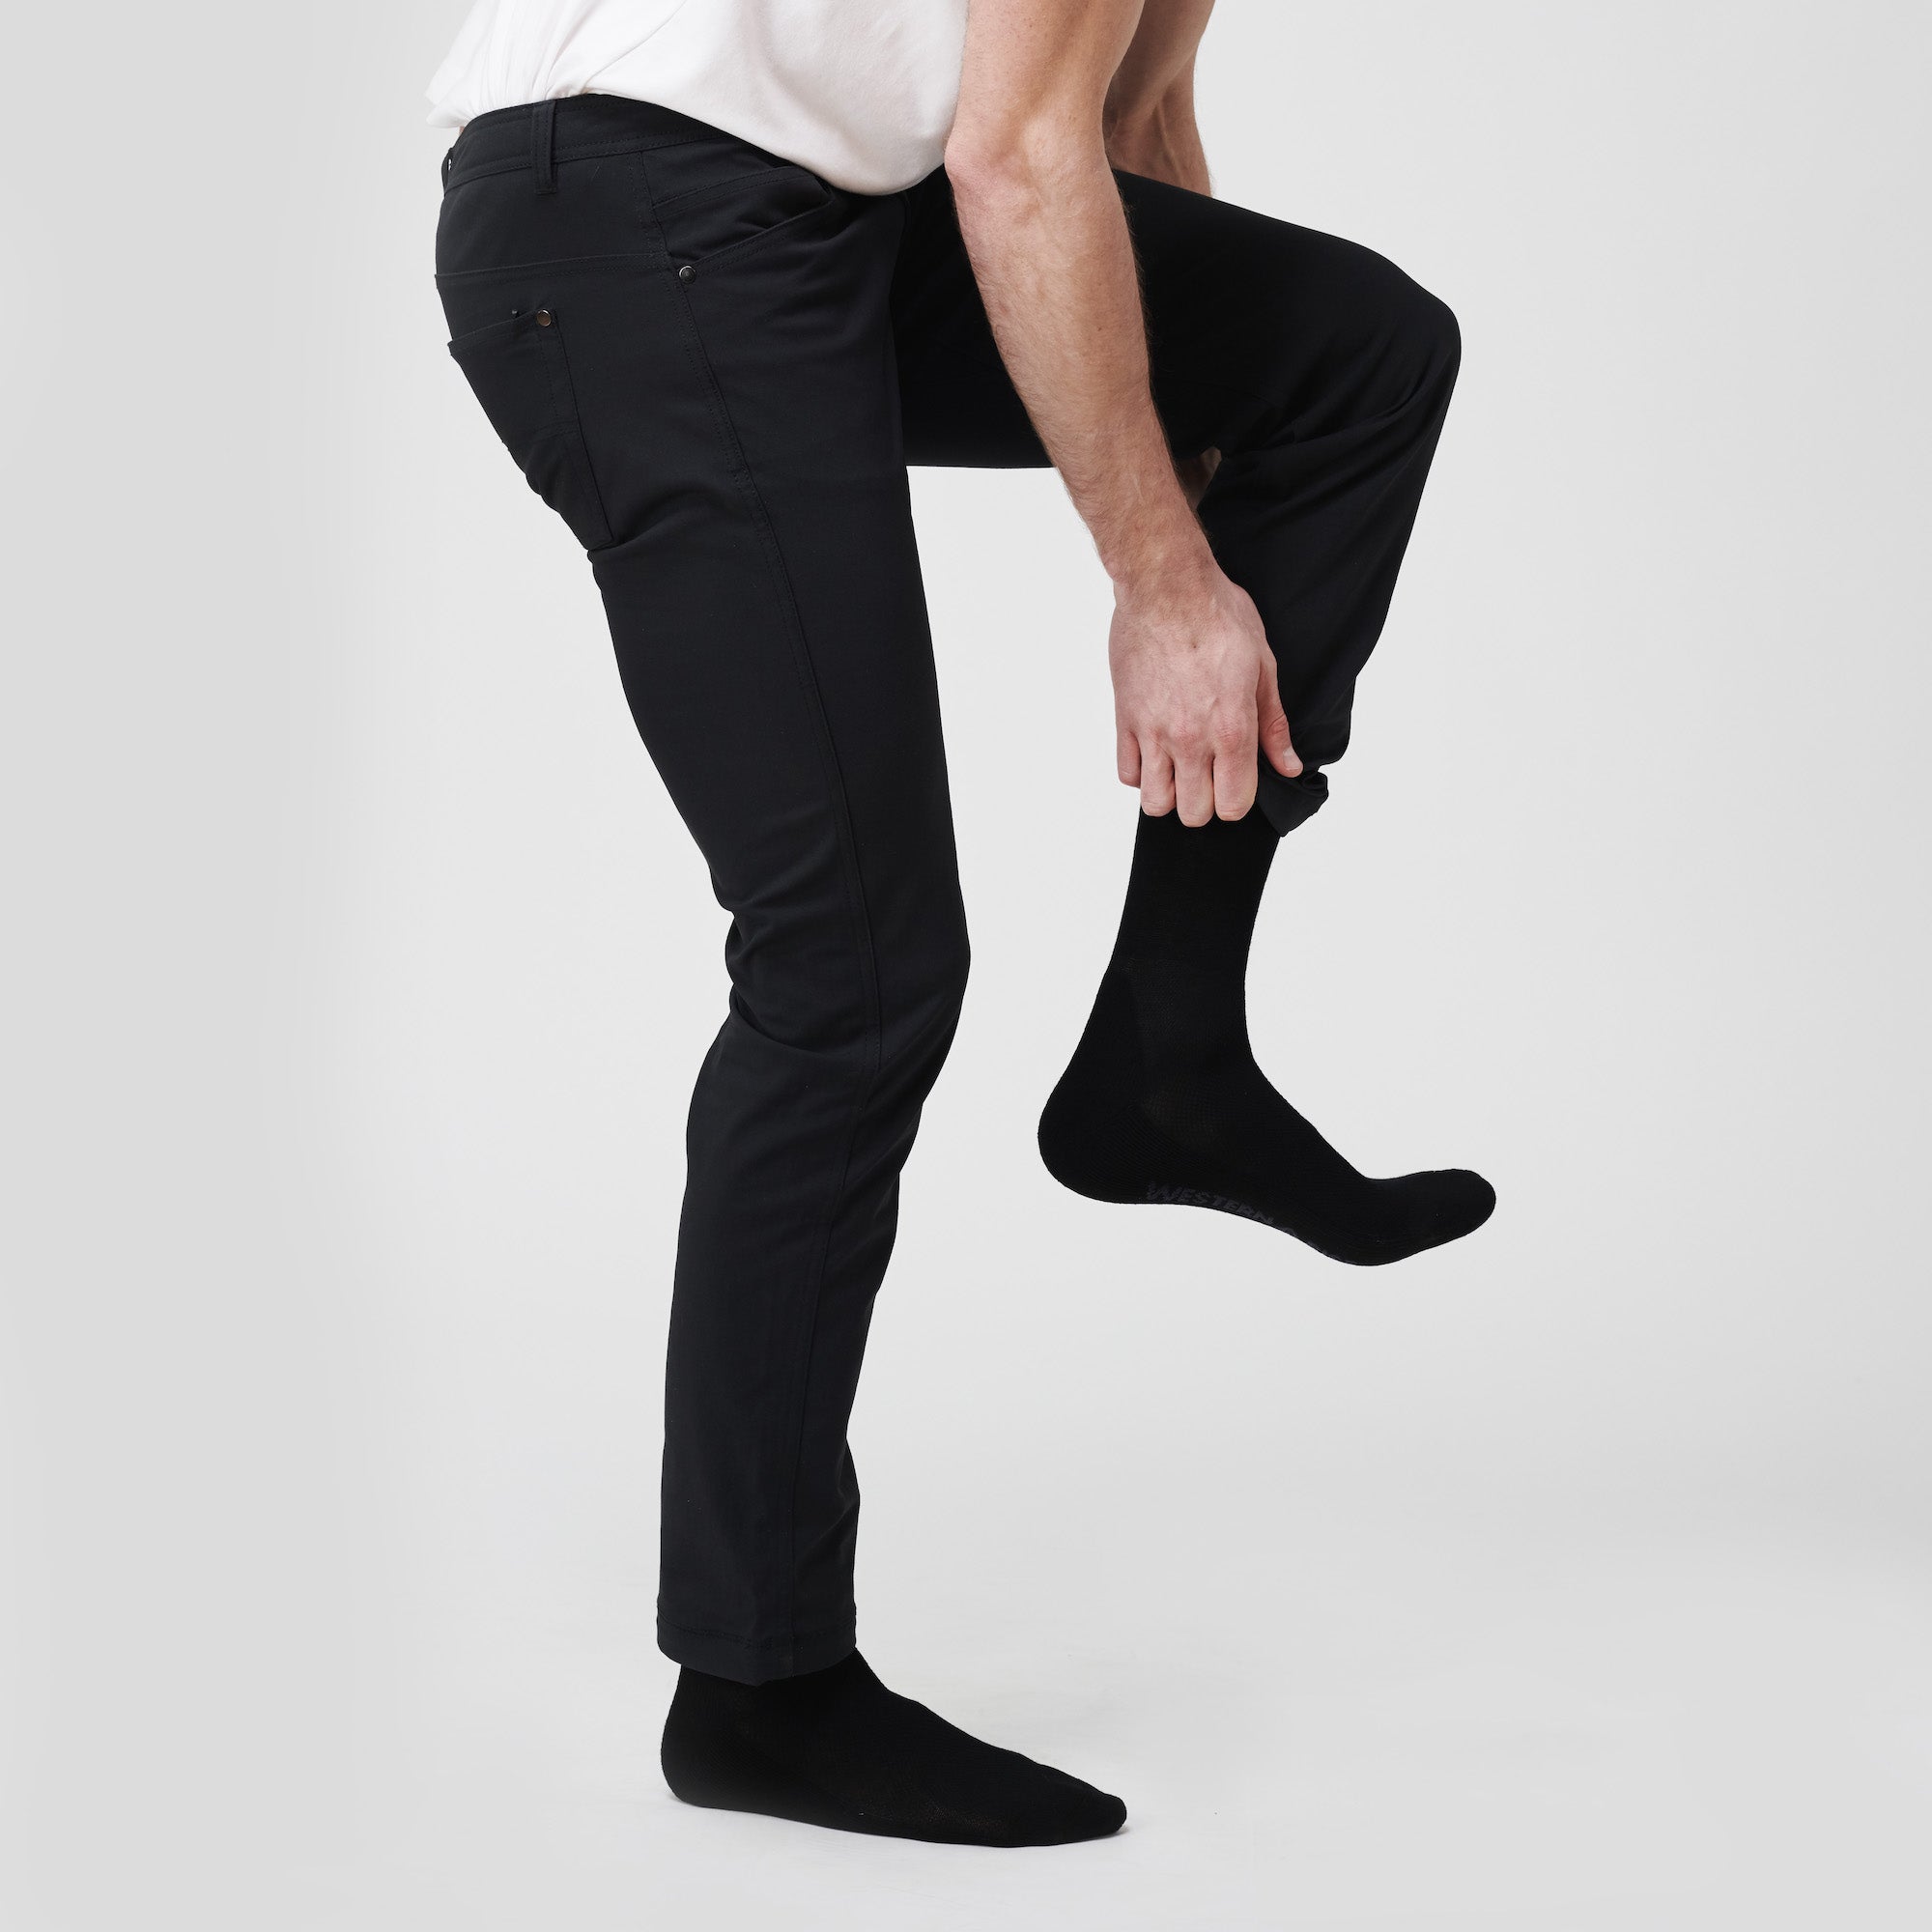 Salomon Men's Merino Low Socks 2 Pack